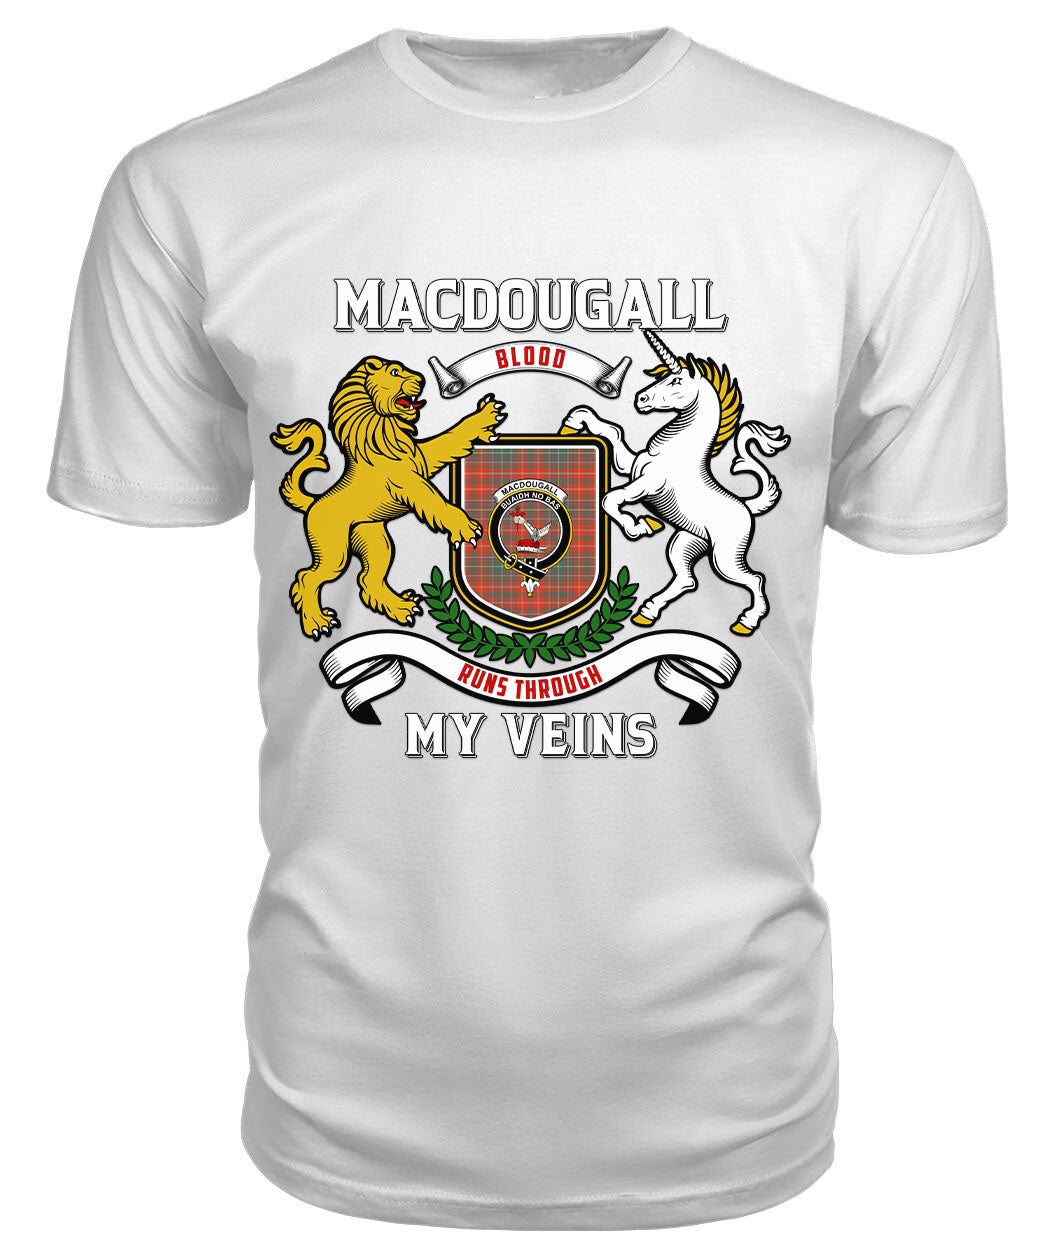 MacDougall Ancient Tartan Crest 2D T-shirt - Blood Runs Through My Veins Style